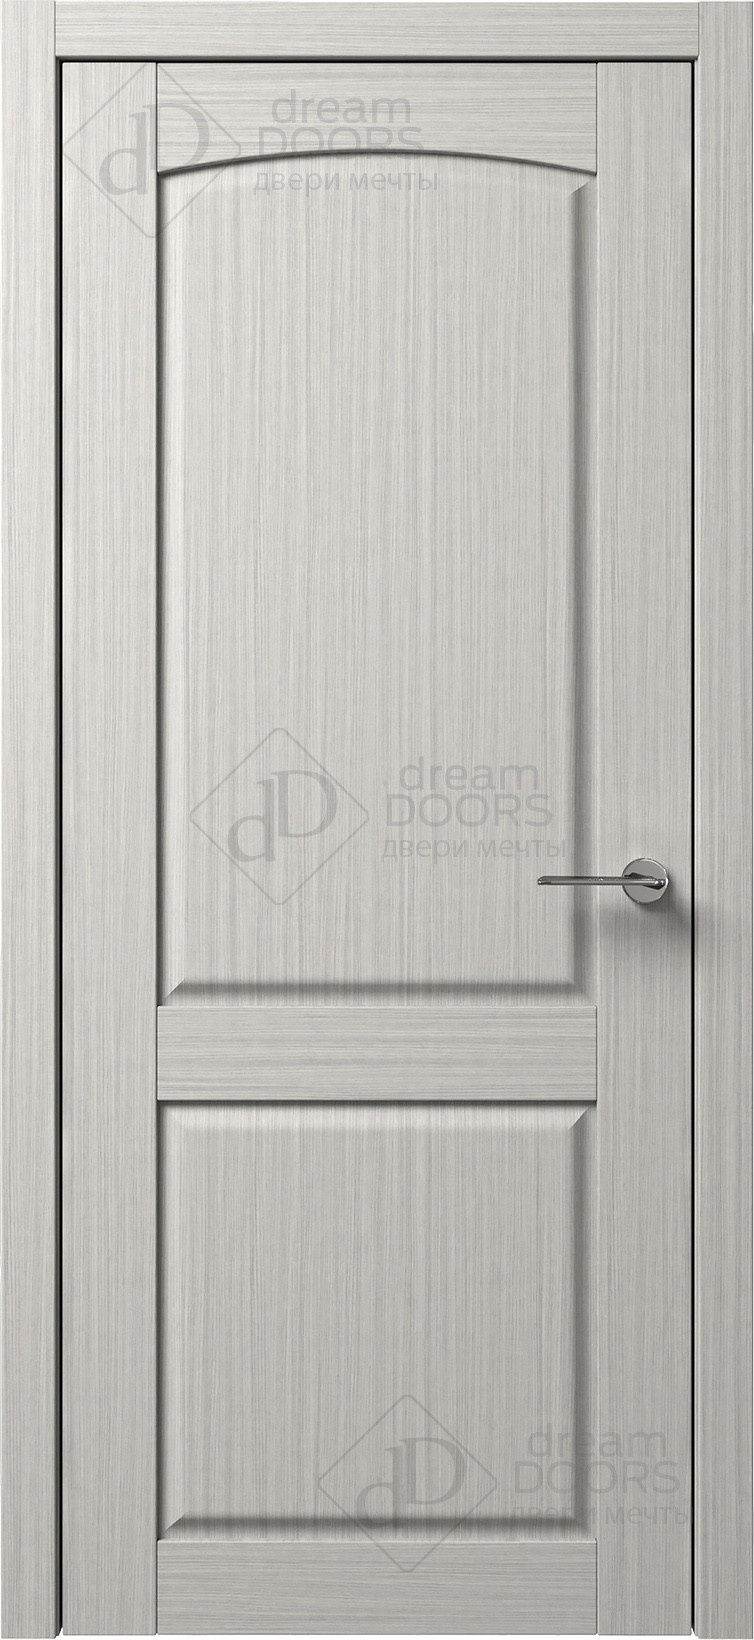 Dream Doors Межкомнатная дверь B1-3, арт. 5545 - фото №1